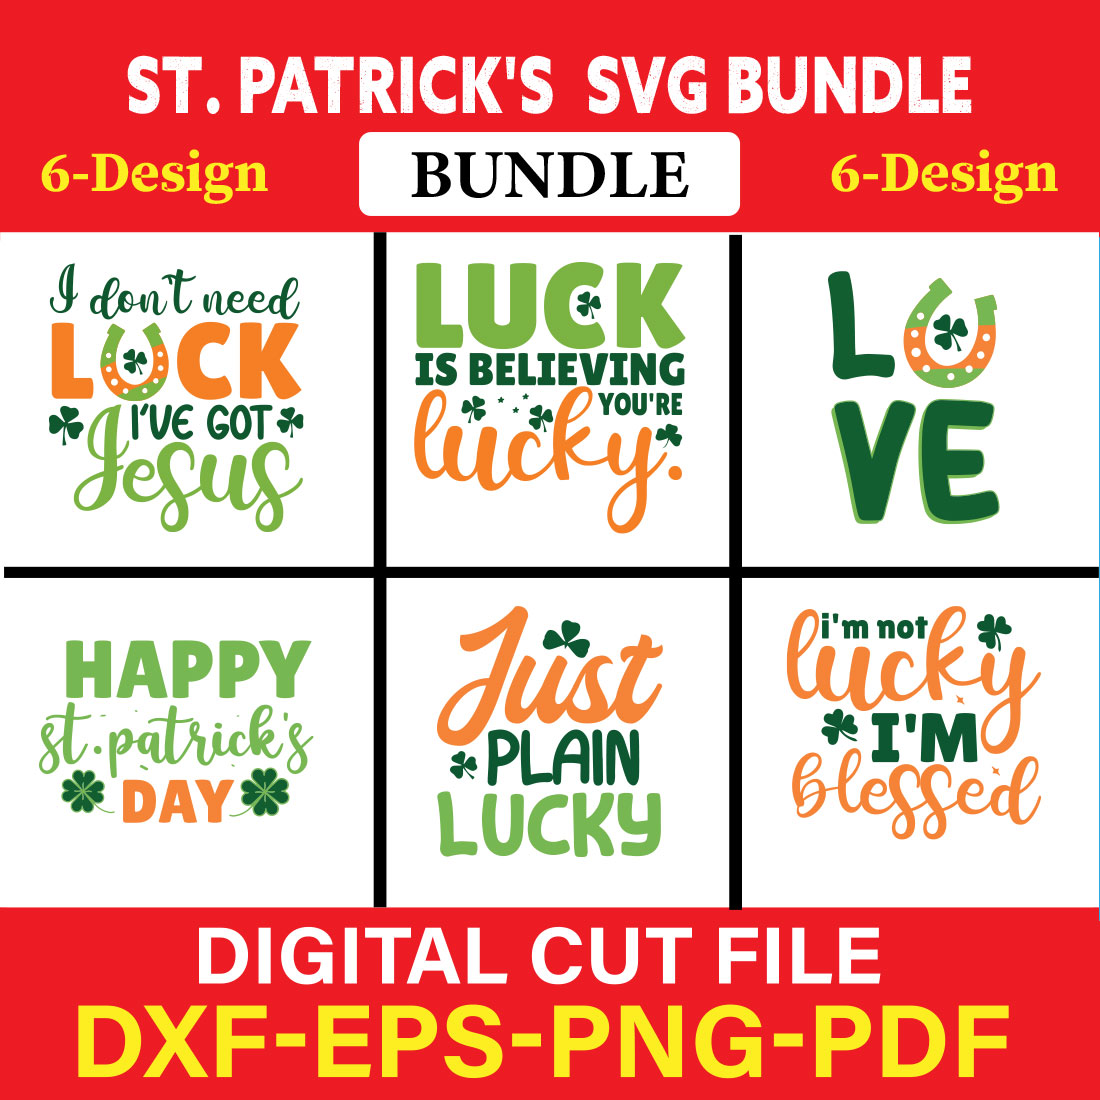 St Patrick's T-shirt Design Bundle Vol-2 cover image.